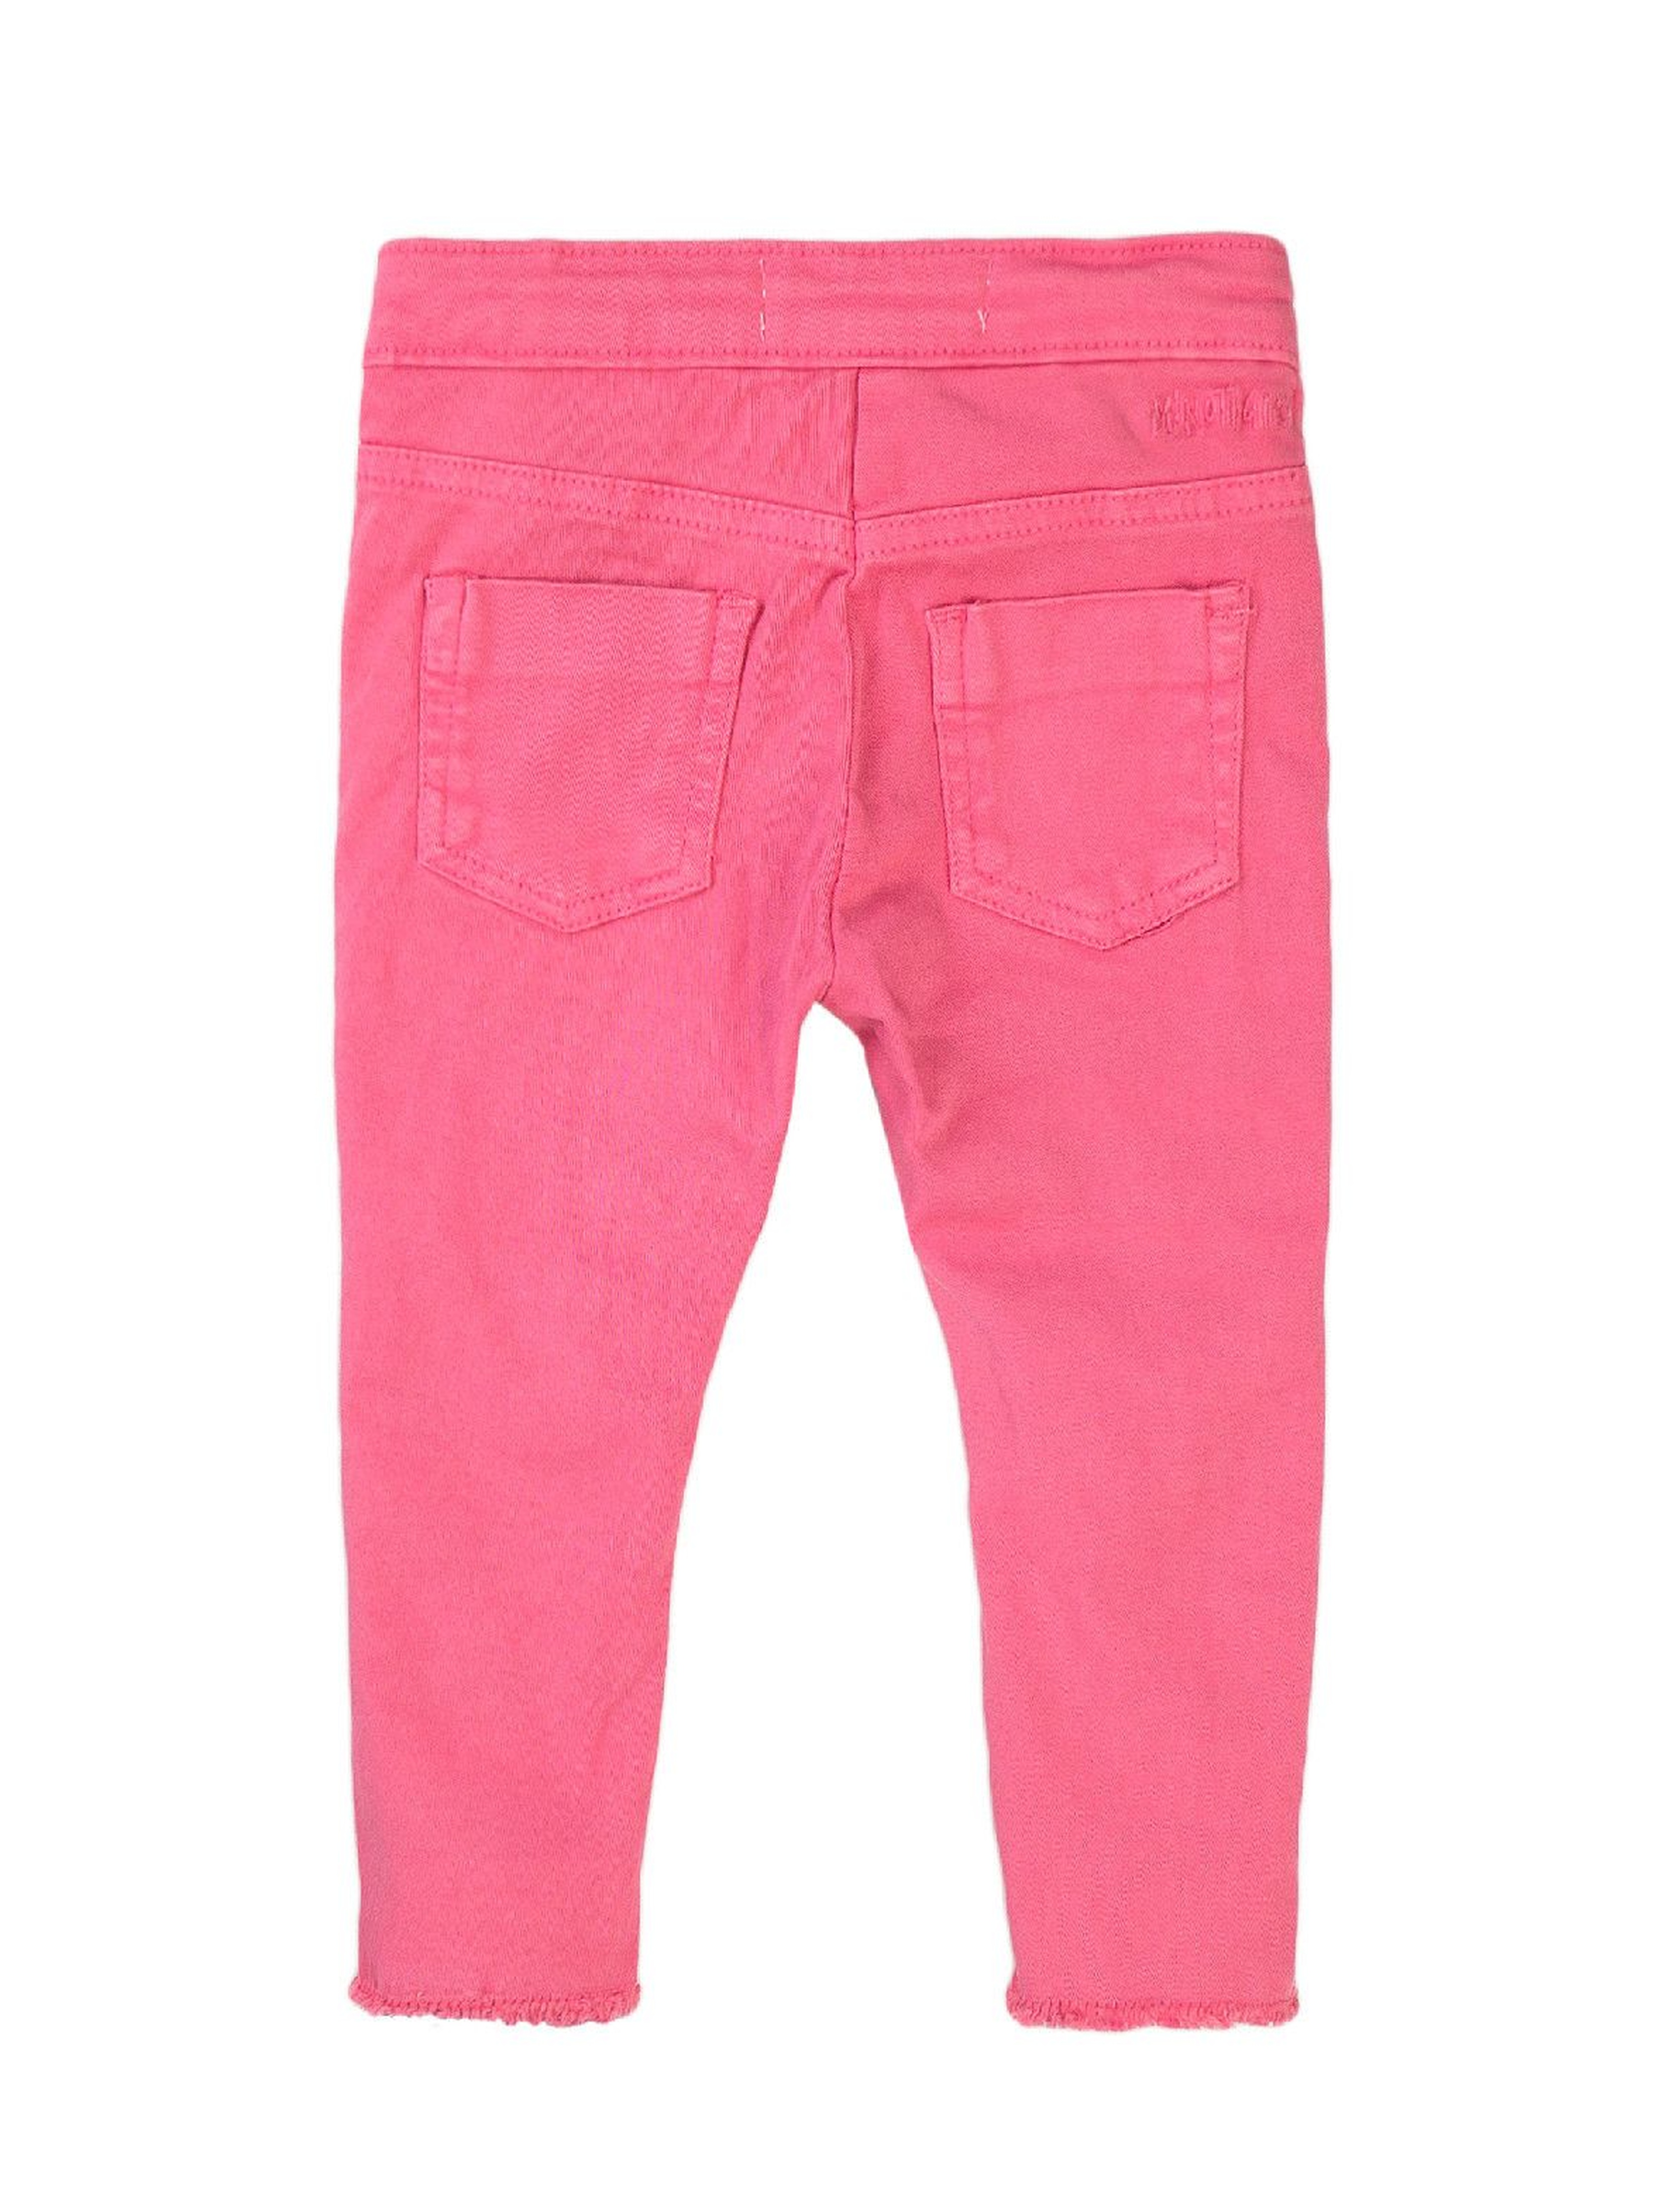 Spodnie dziewczęce w kolorze różowym z rozcięciami na kolanach